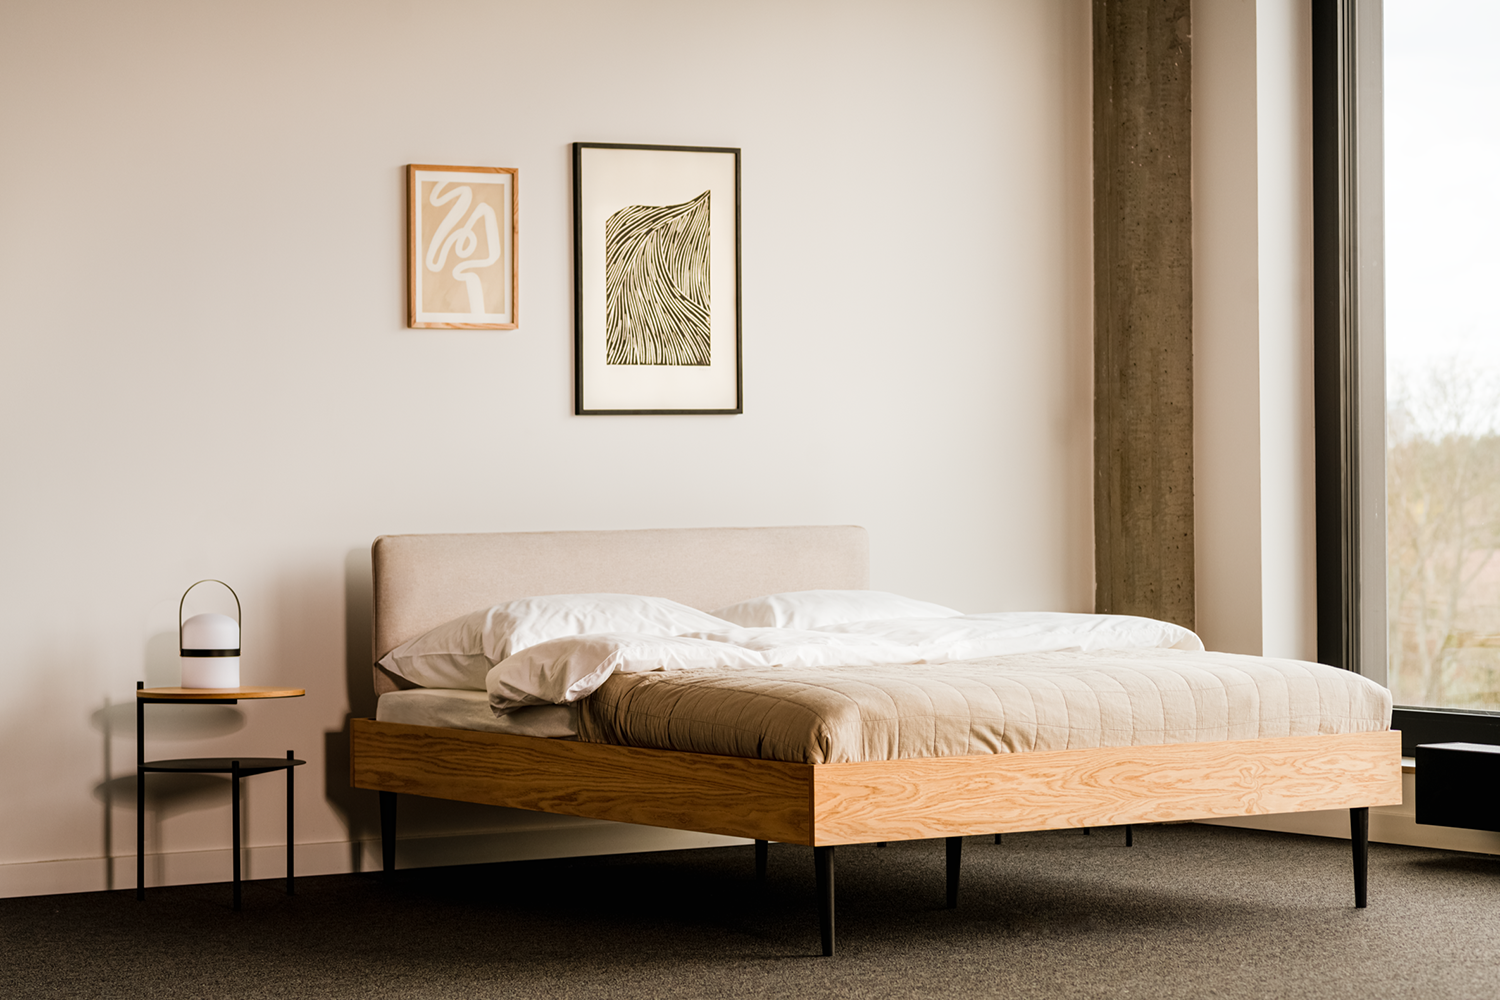 Streiko Bett mit Kopfteil in Natur / Sand Beige präsentiert im Onlineshop von KAQTU Design AG. Bett ist von Noo.ma